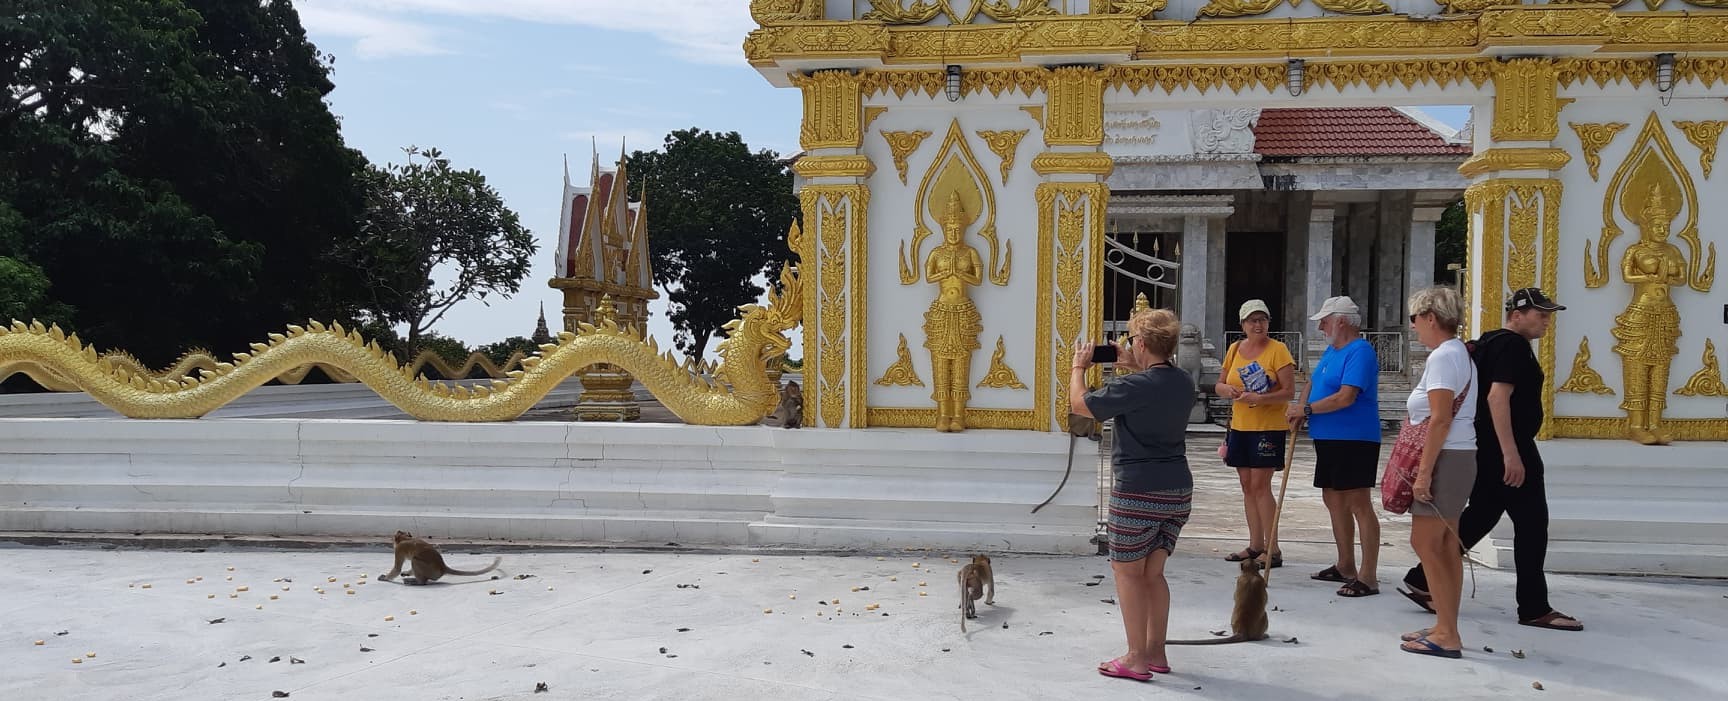 Temple avec des singes, en Thailande dans la province de Rayong